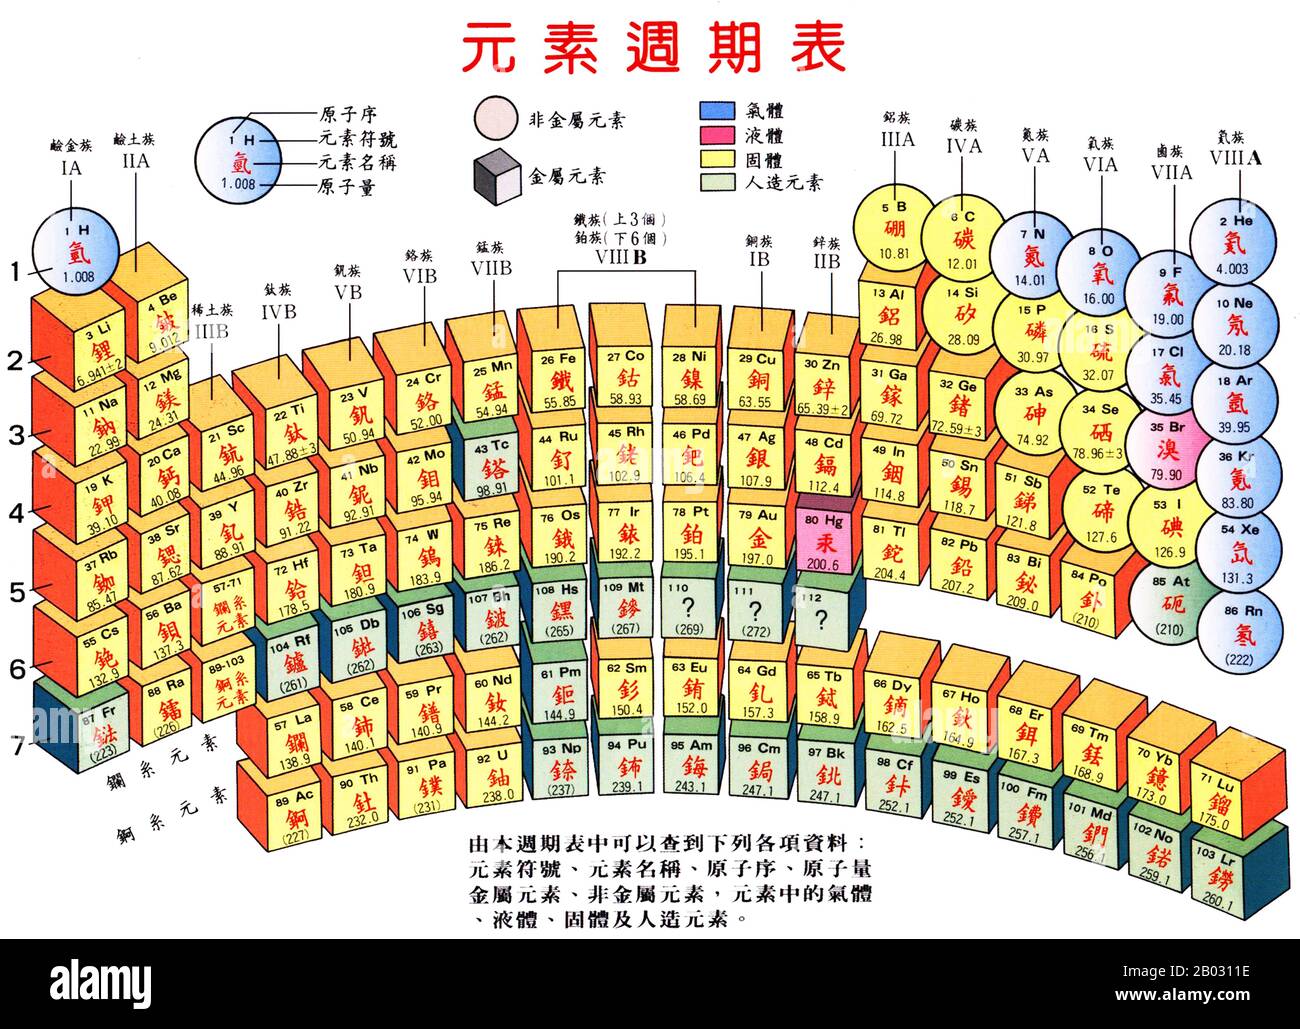 Tavola periodica degli elementi, Cina. La tabella periodica è una disposizione tabulare degli elementi chimici, ordinati per numero atomico (numero di protoni nel nucleo), configurazioni di elettroni e proprietà chimiche ricorrenti. La tabella mostra anche quattro blocchi rettangolari: S-, p- d- e f-Block. In generale, entro una fila (periodo) gli elementi sono metalli sul lato sinistro e non metalli sul lato destro. Foto Stock